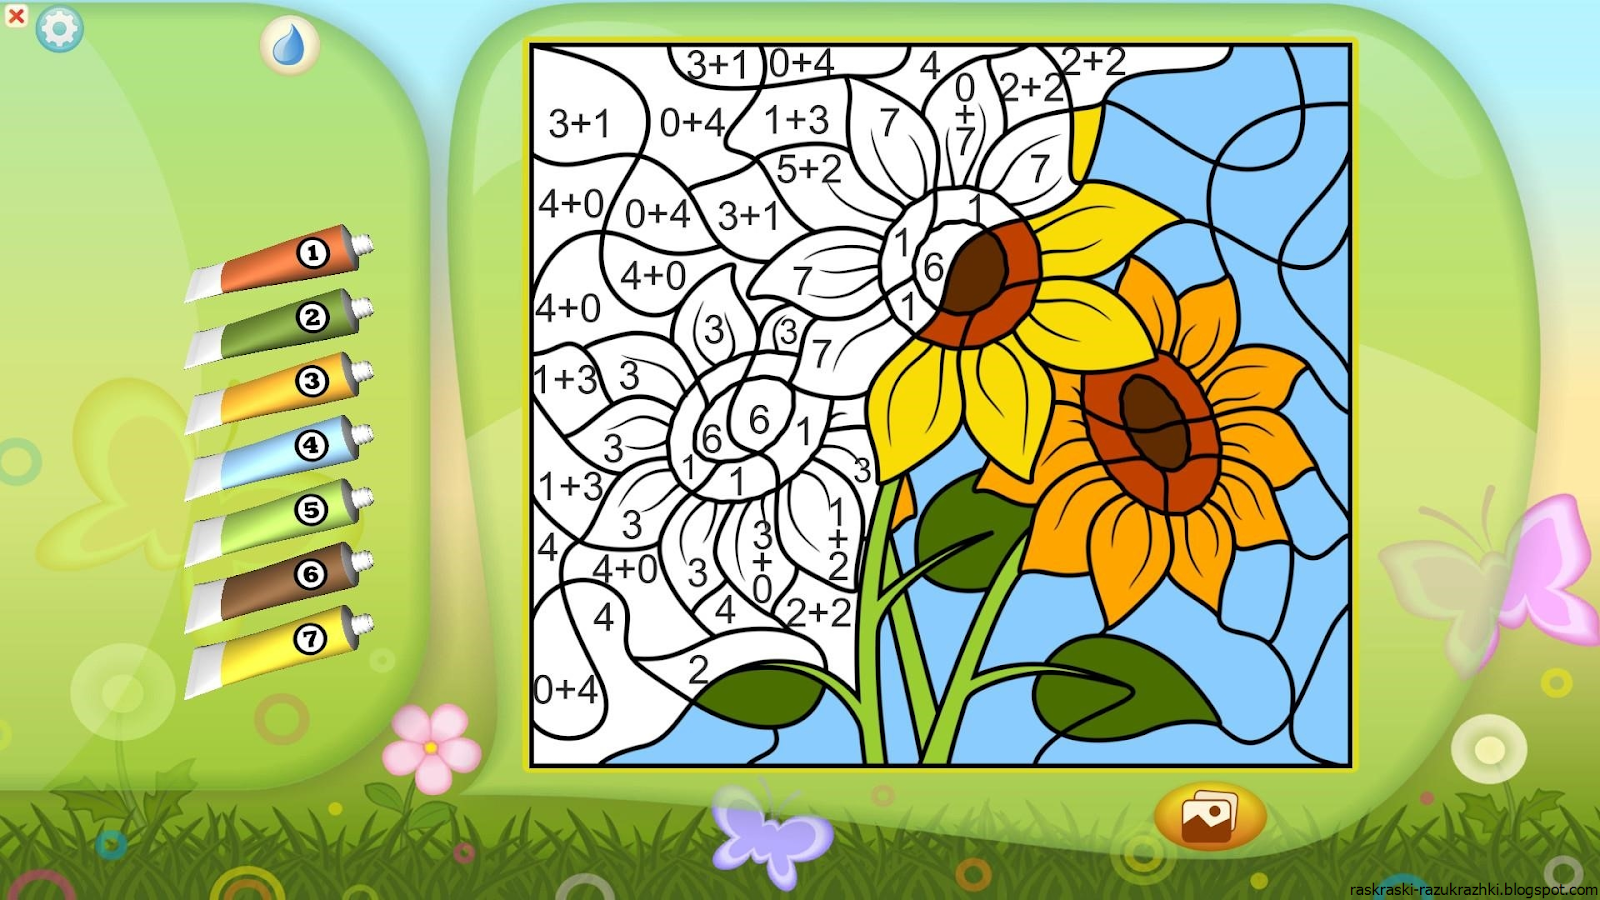 Игра раскрась. Раскраски. Игры. Рисунки по номерам для детей. Игры для детей: раскраски. Игра цветы разукрашивать по номерам.